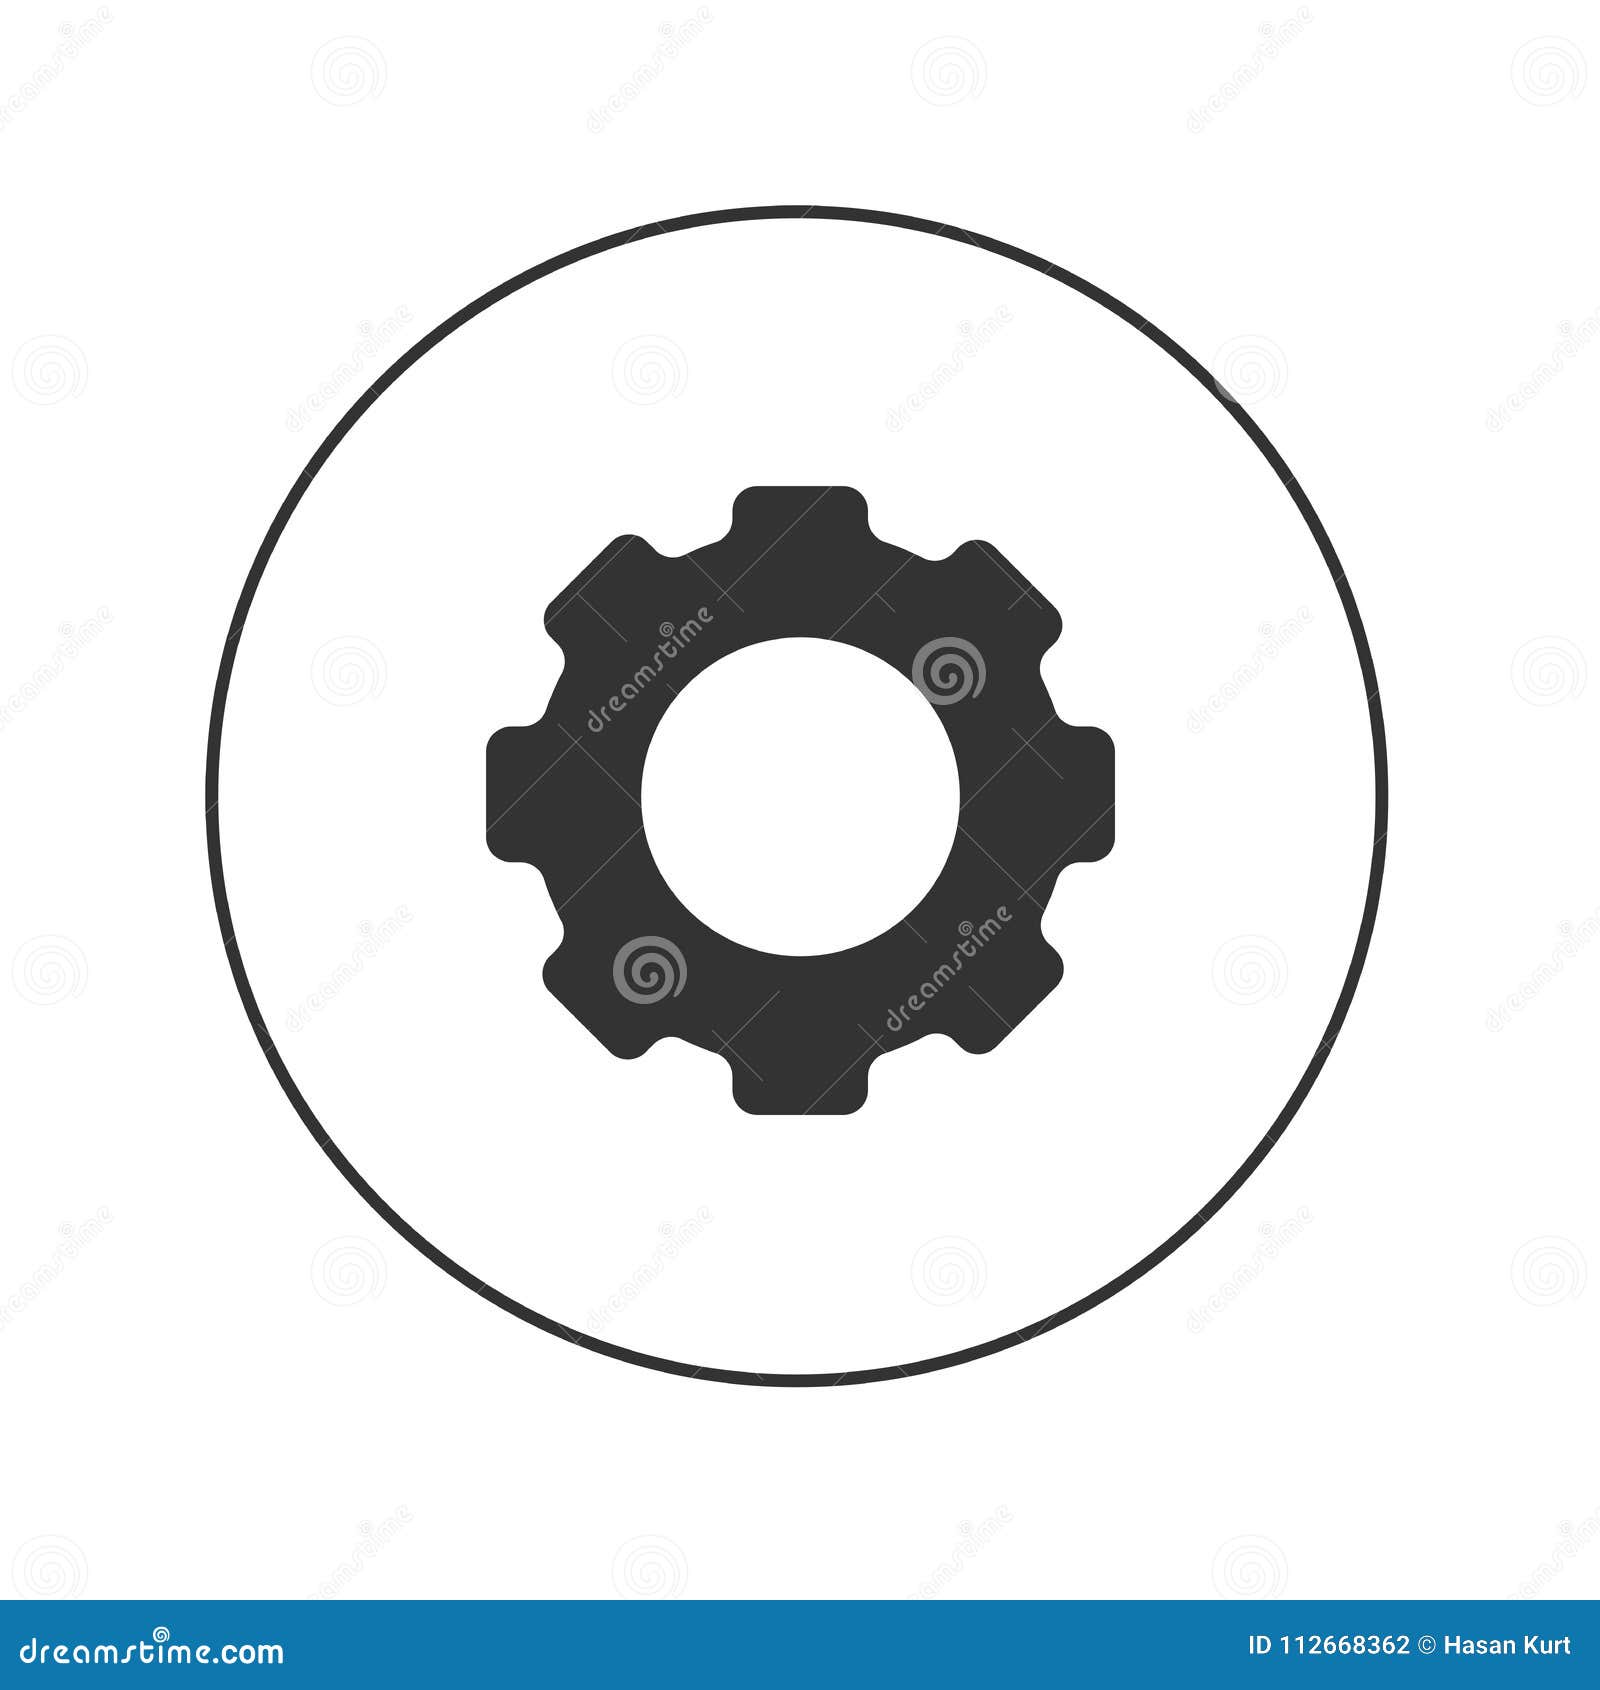 gear web icon